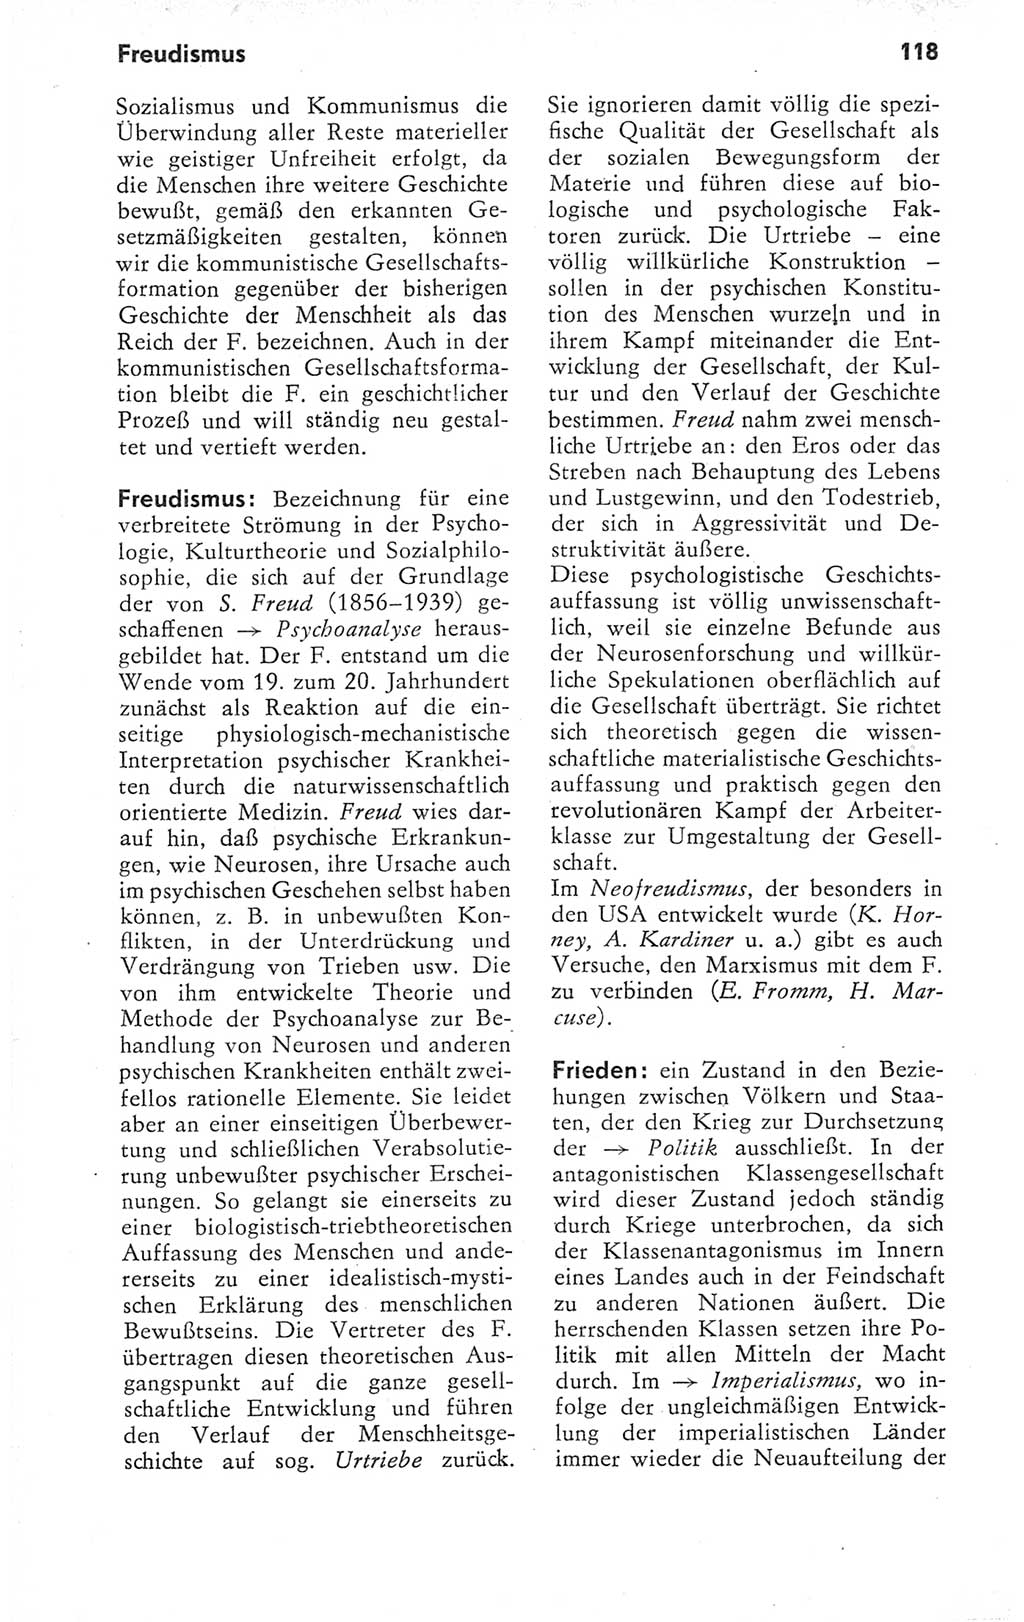 Kleines Wörterbuch der marxistisch-leninistischen Philosophie [Deutsche Demokratische Republik (DDR)] 1979, Seite 118 (Kl. Wb. ML Phil. DDR 1979, S. 118)